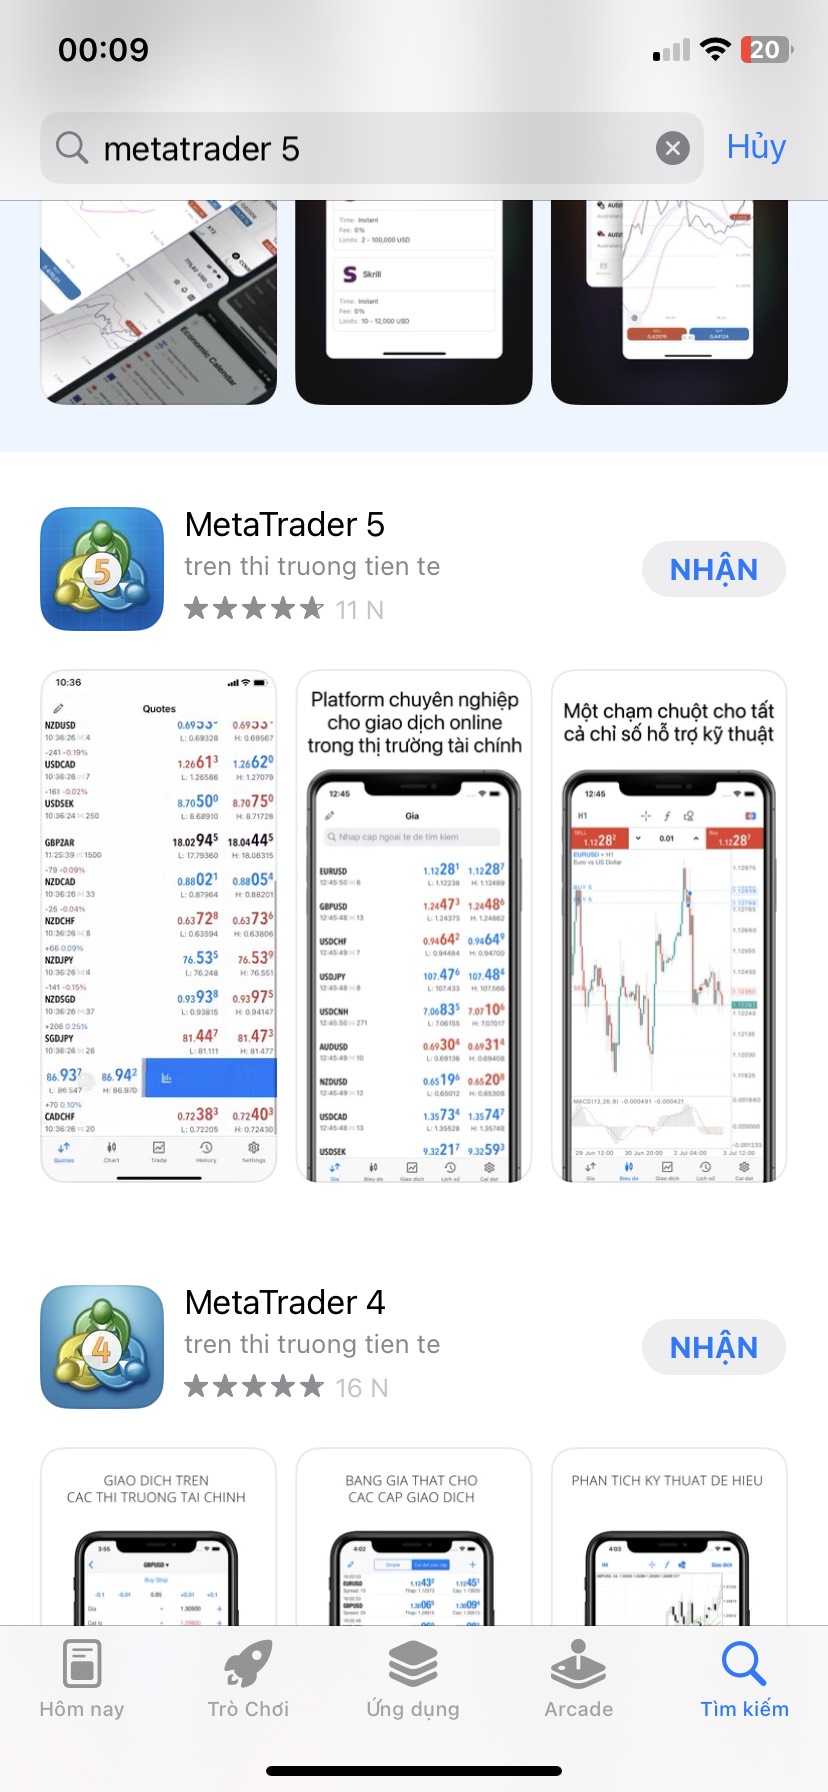 Ảnh hướng dẫn cách tải Metatrader 5 trên điện thoại iPhone hệ điều hành iOS